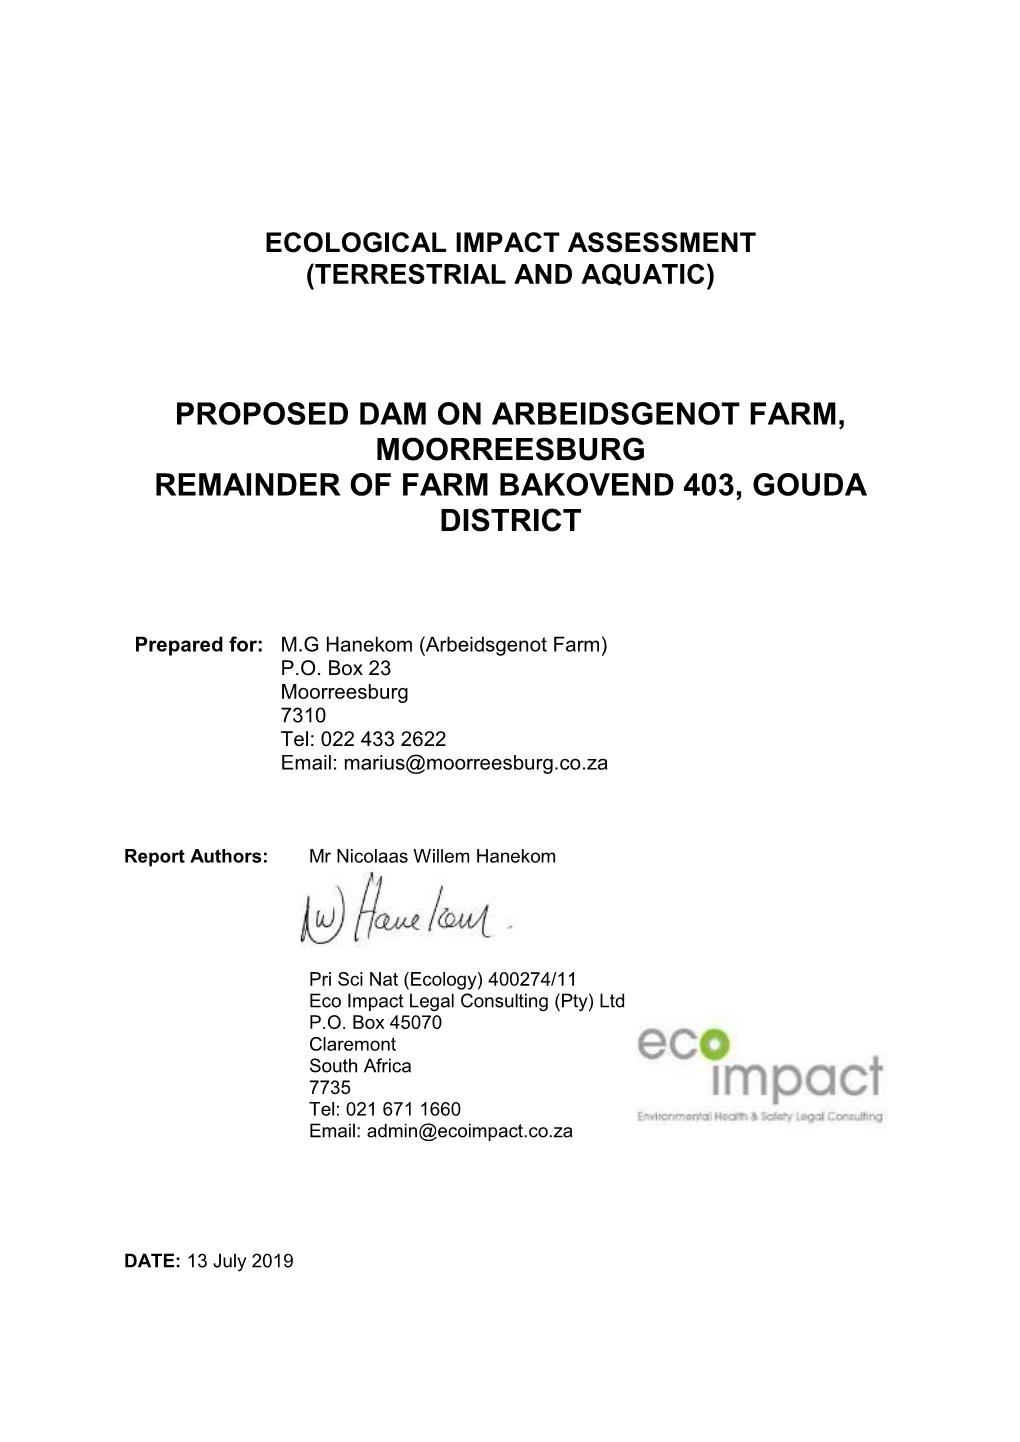 Arbeidsgenot Dam Ecological Assessment